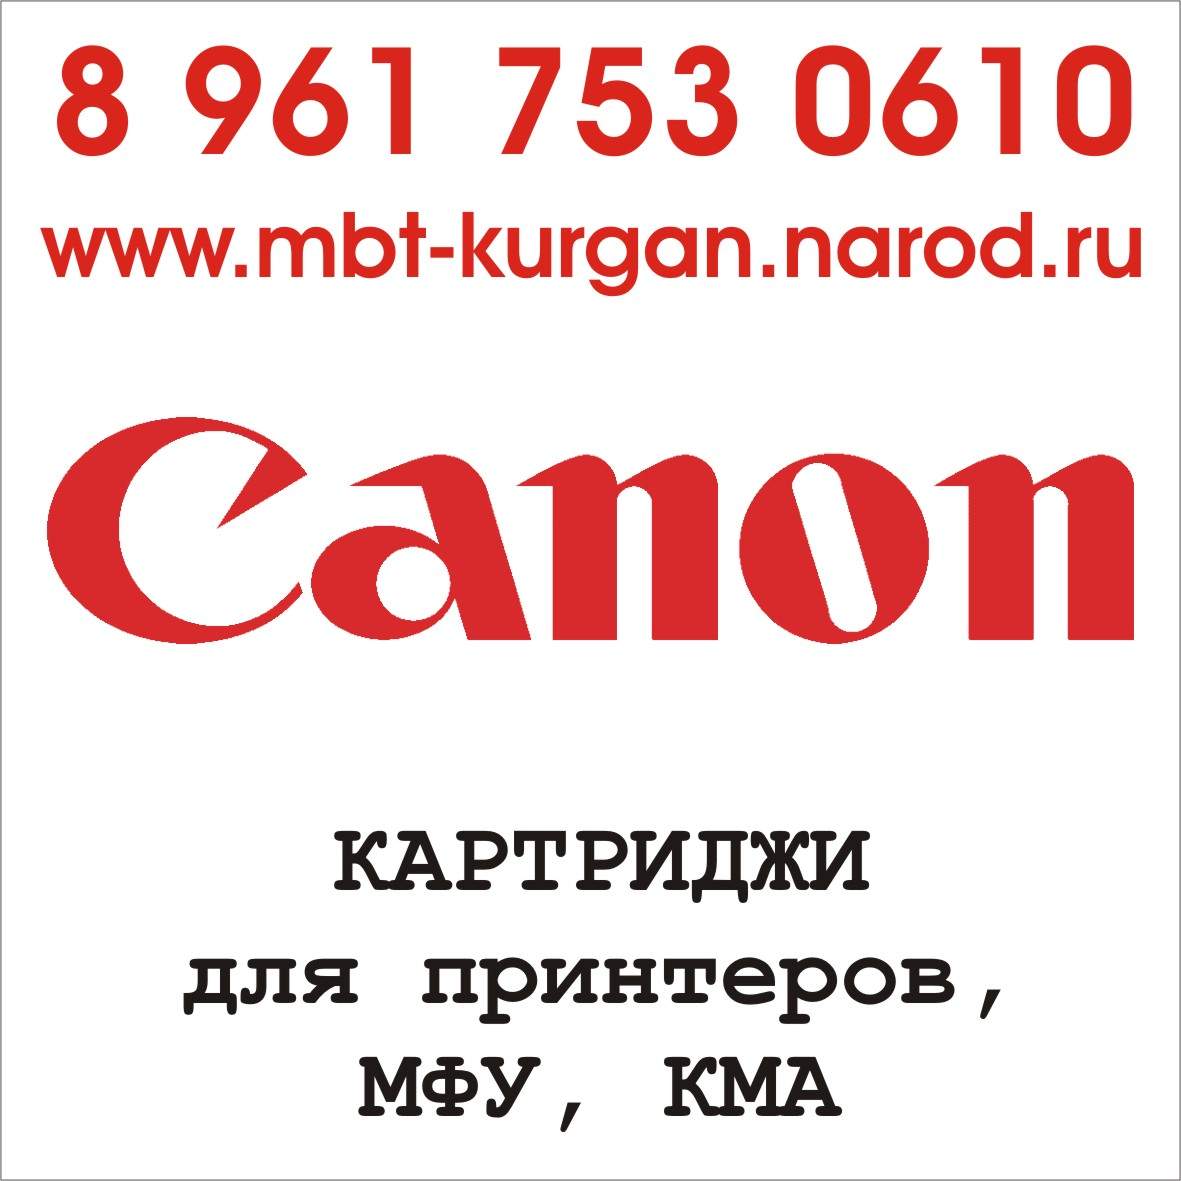 Картриджи для принтеров, МФУ, КМА Canon